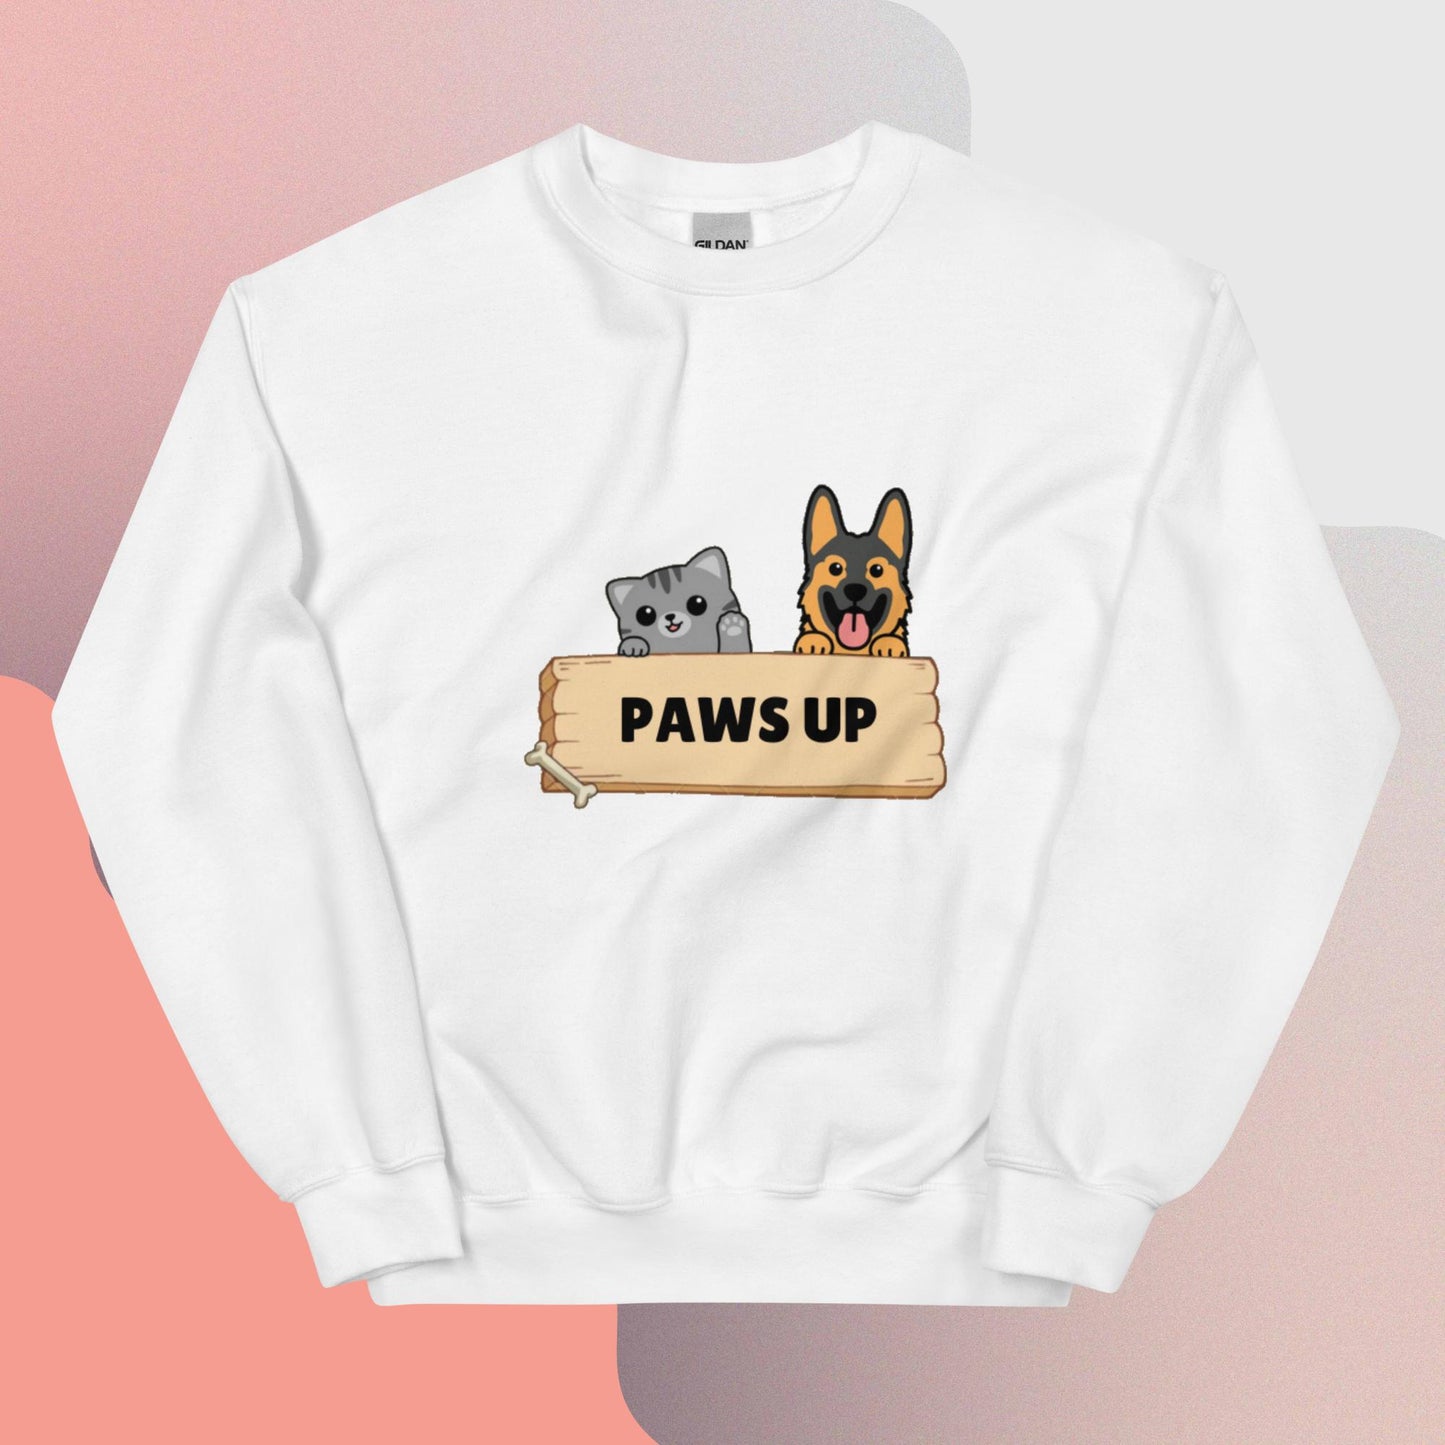 PawsUp Unisex Sweatshirt